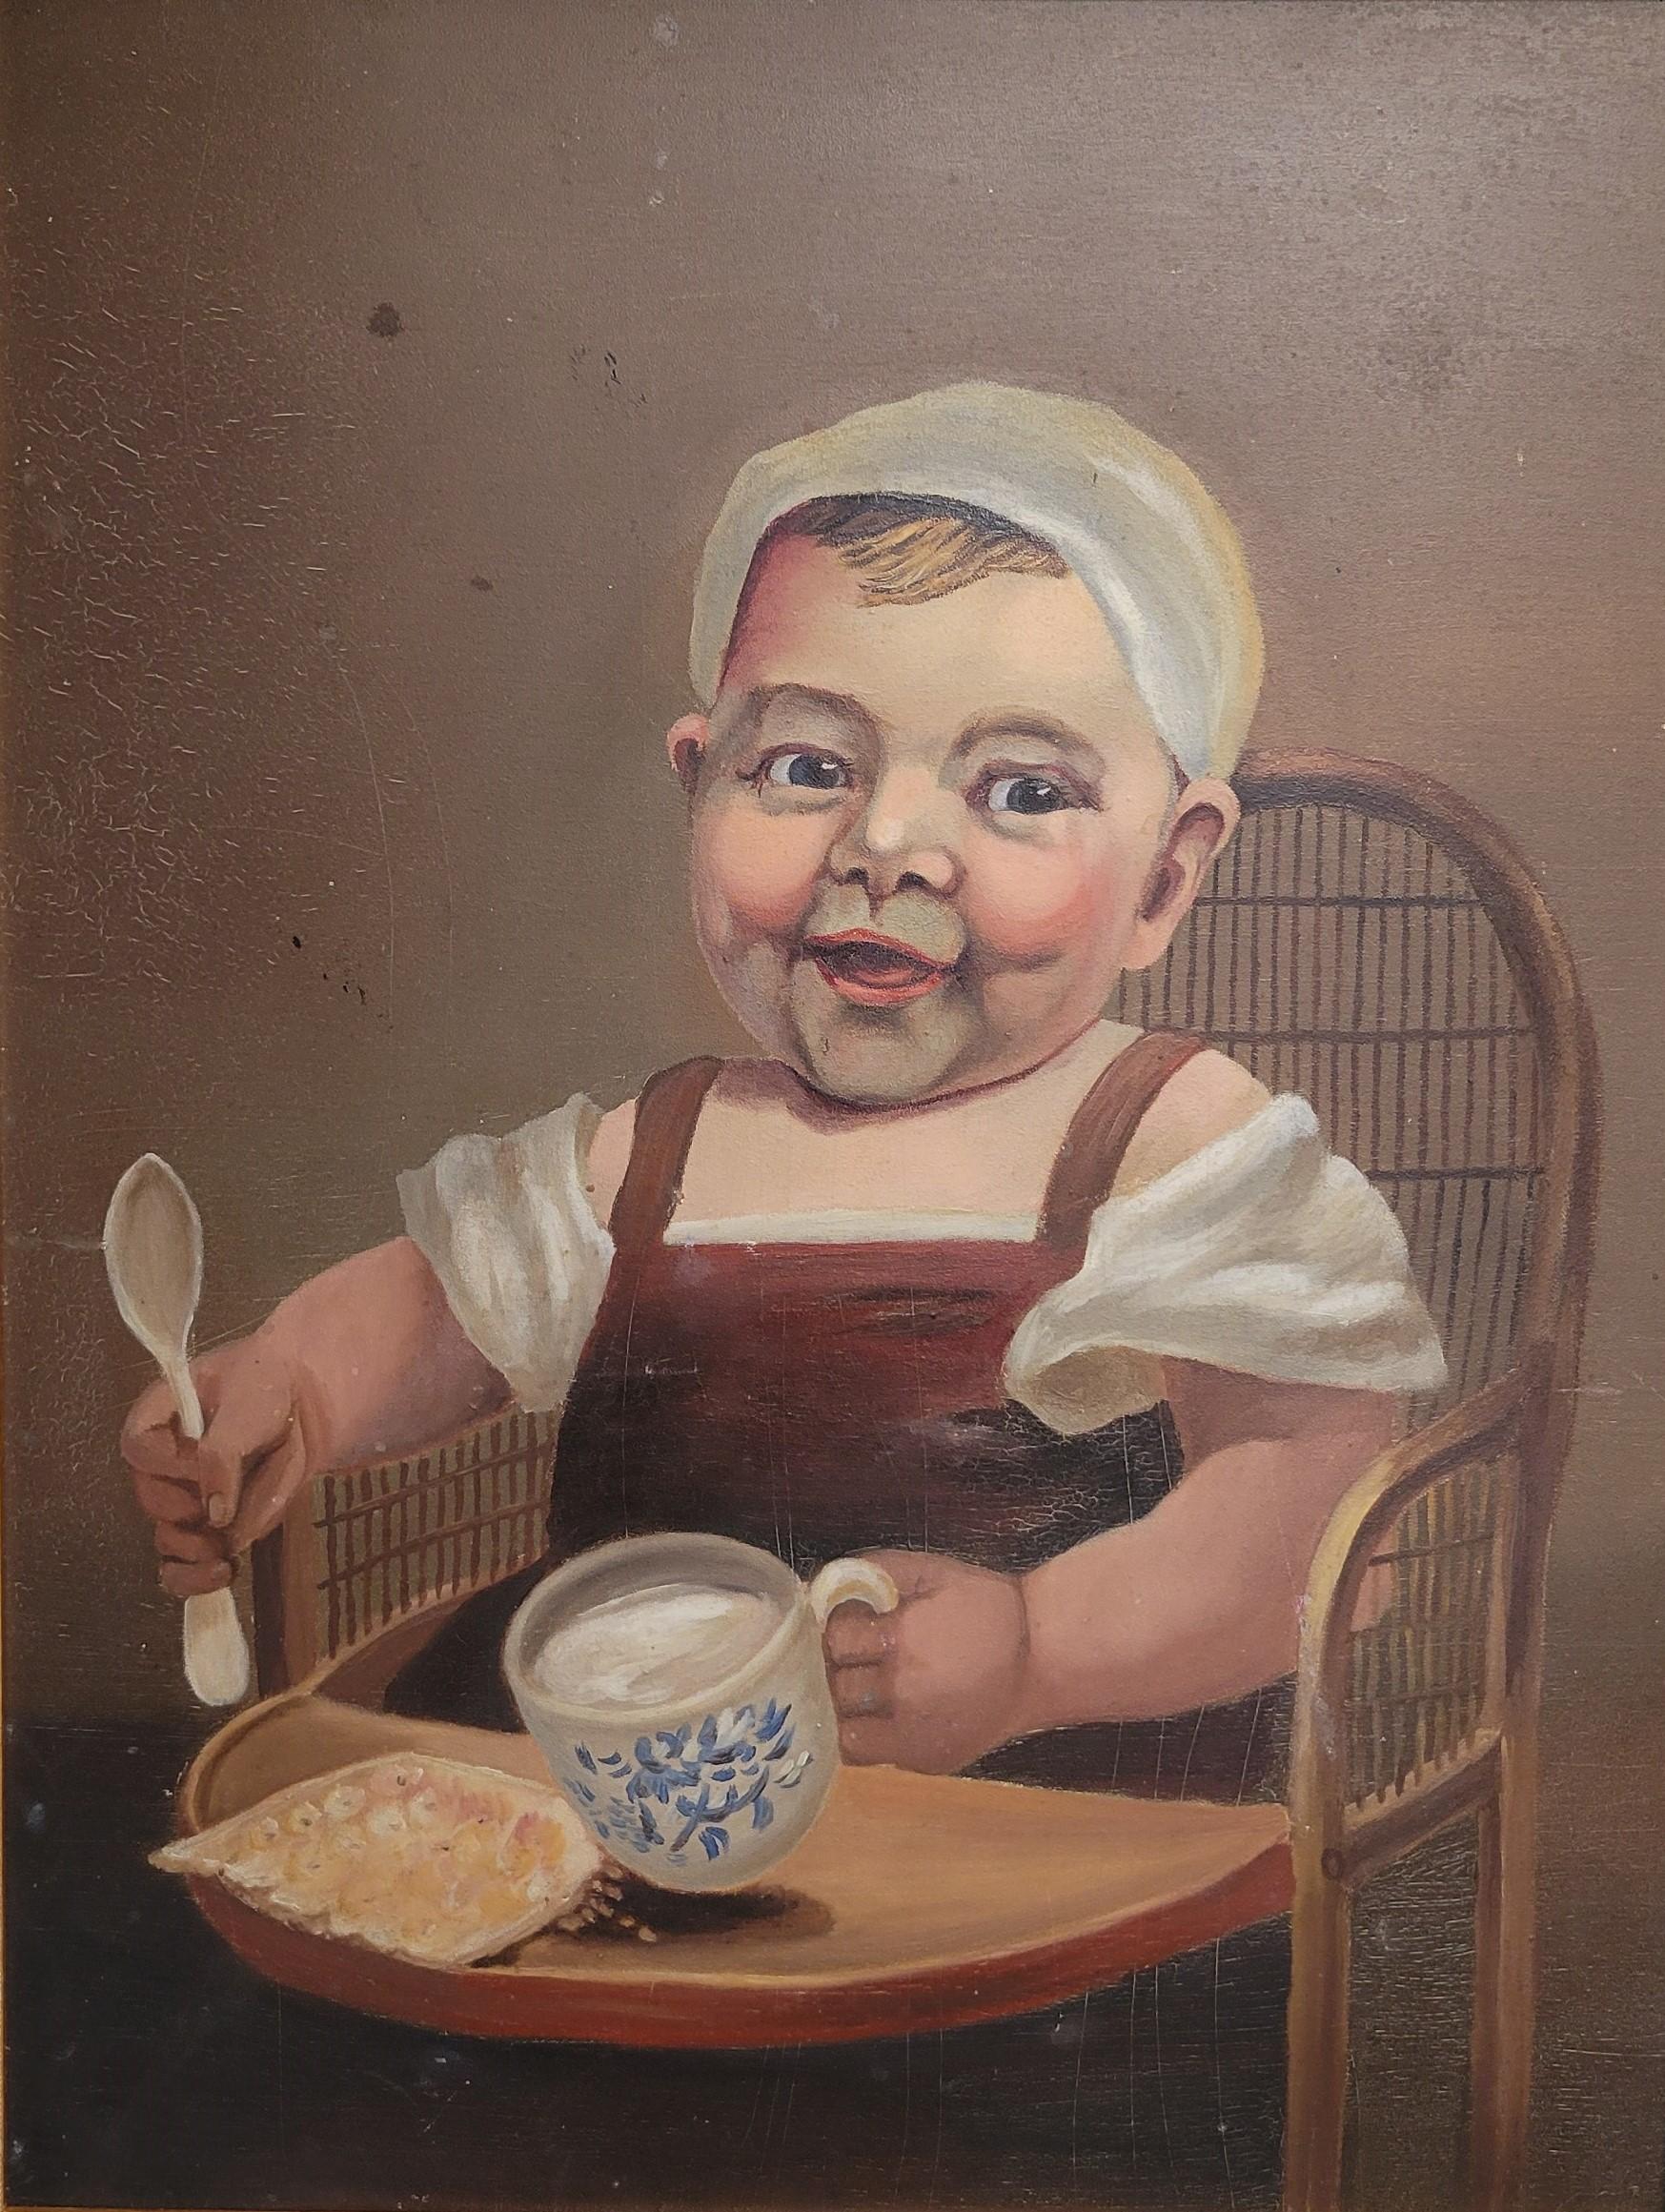 Une charmante peinture vintage à l'huile sur panneau de fibres représentant un jeune enfant avec une tasse bleue et blanche et un morceau de pain ( ?). Peint dans des tons chauds de brun, de rose, de marron et de blanc. Des abrasions et des rayures